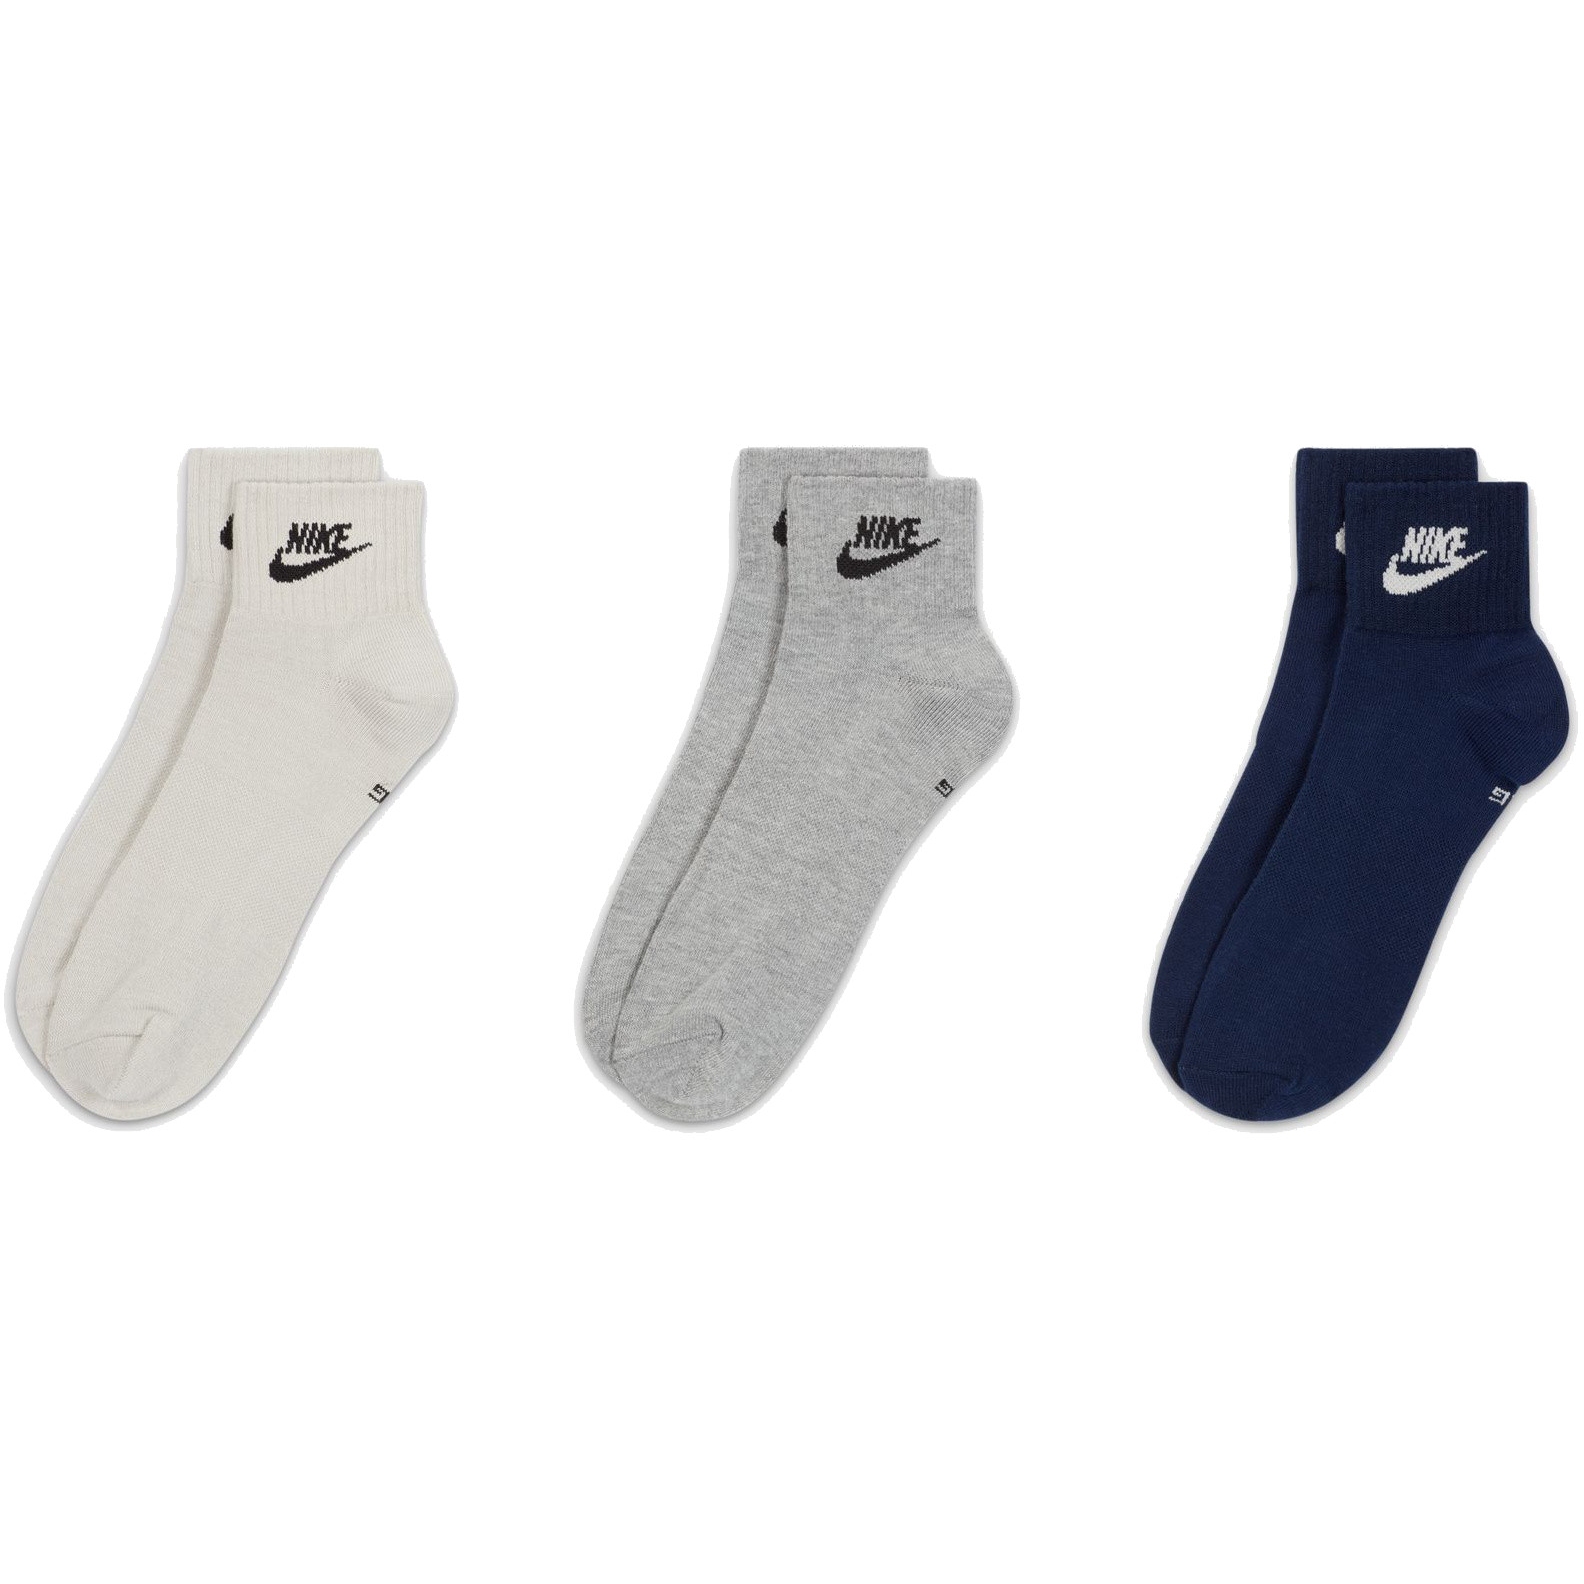 Productfoto van Nike Sportswear Everyday Essential Ankle Sokken - 3 Paar - multi-color DX5074-903